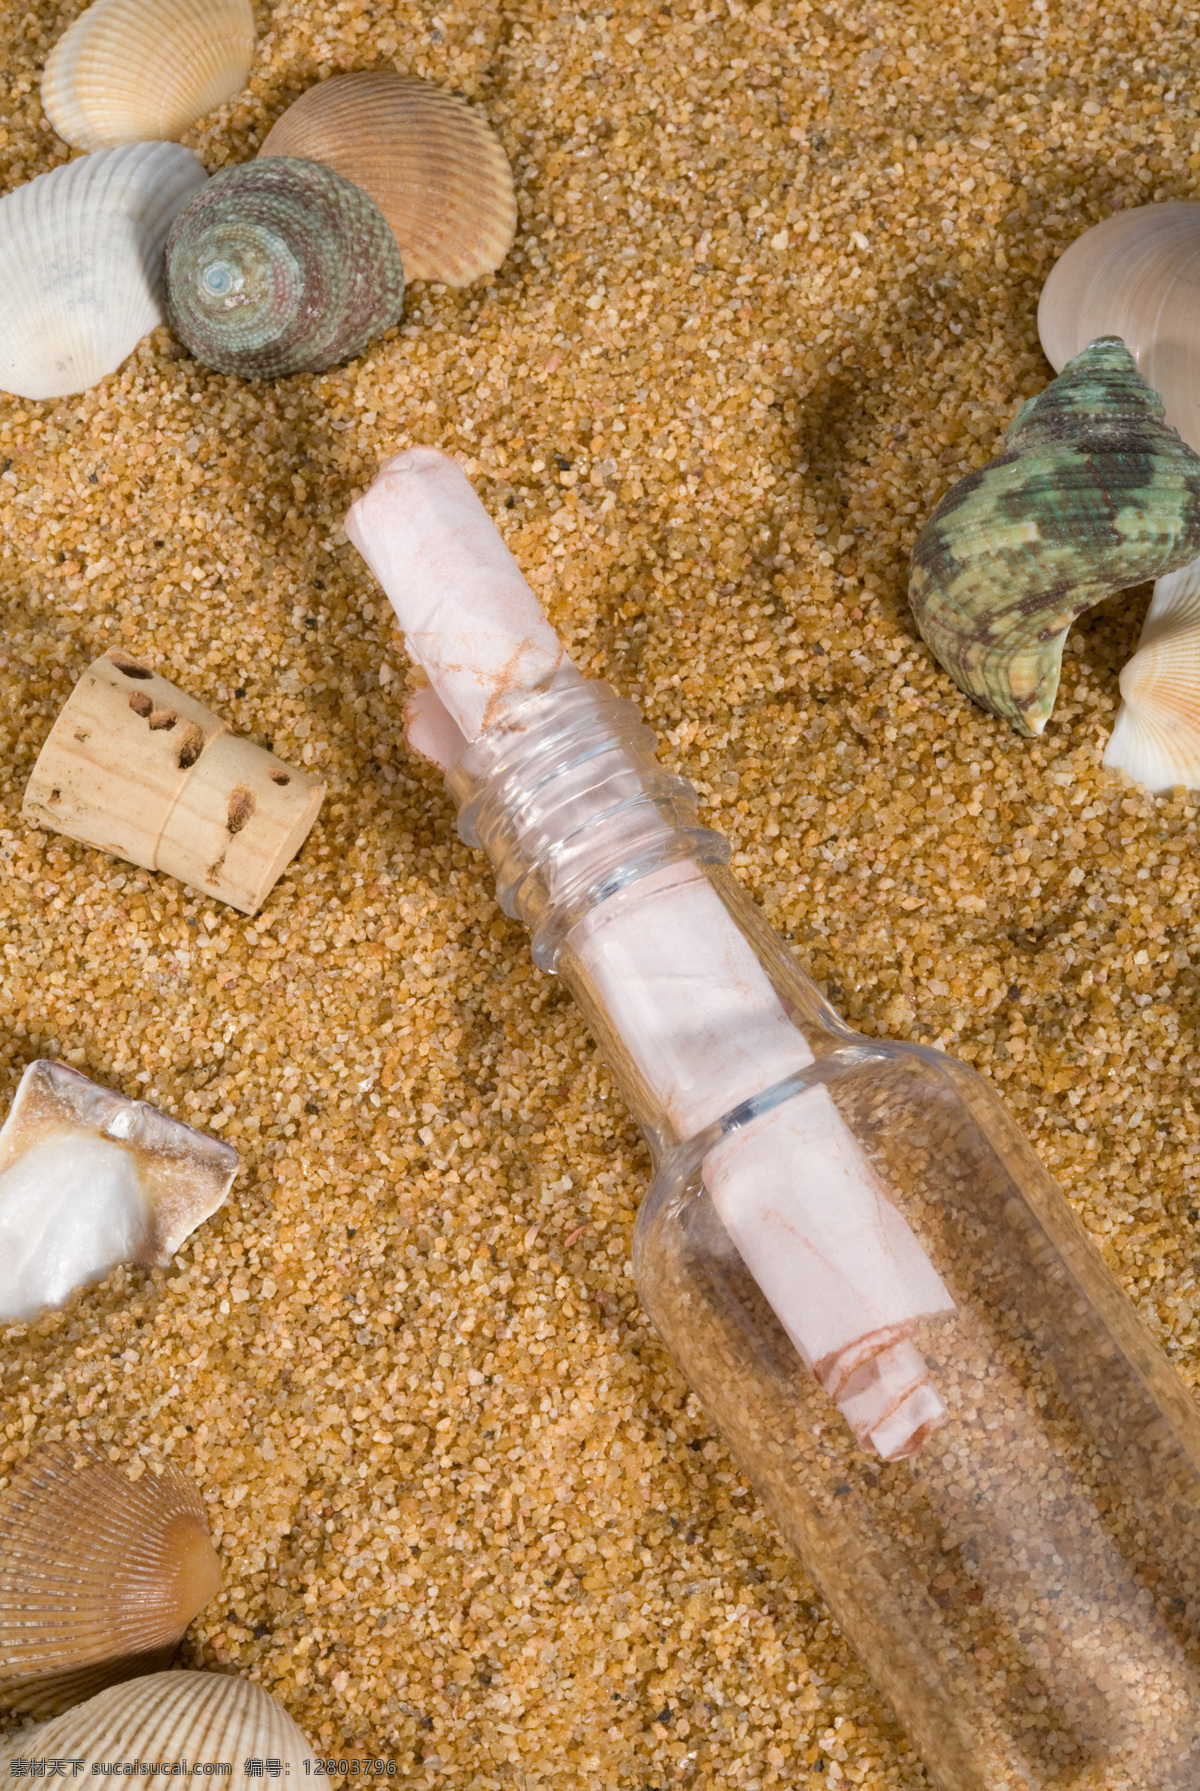 沙滩 许愿 瓶 许愿瓶 飘流瓶 高清图片 贝壳 大海图片 风景图片